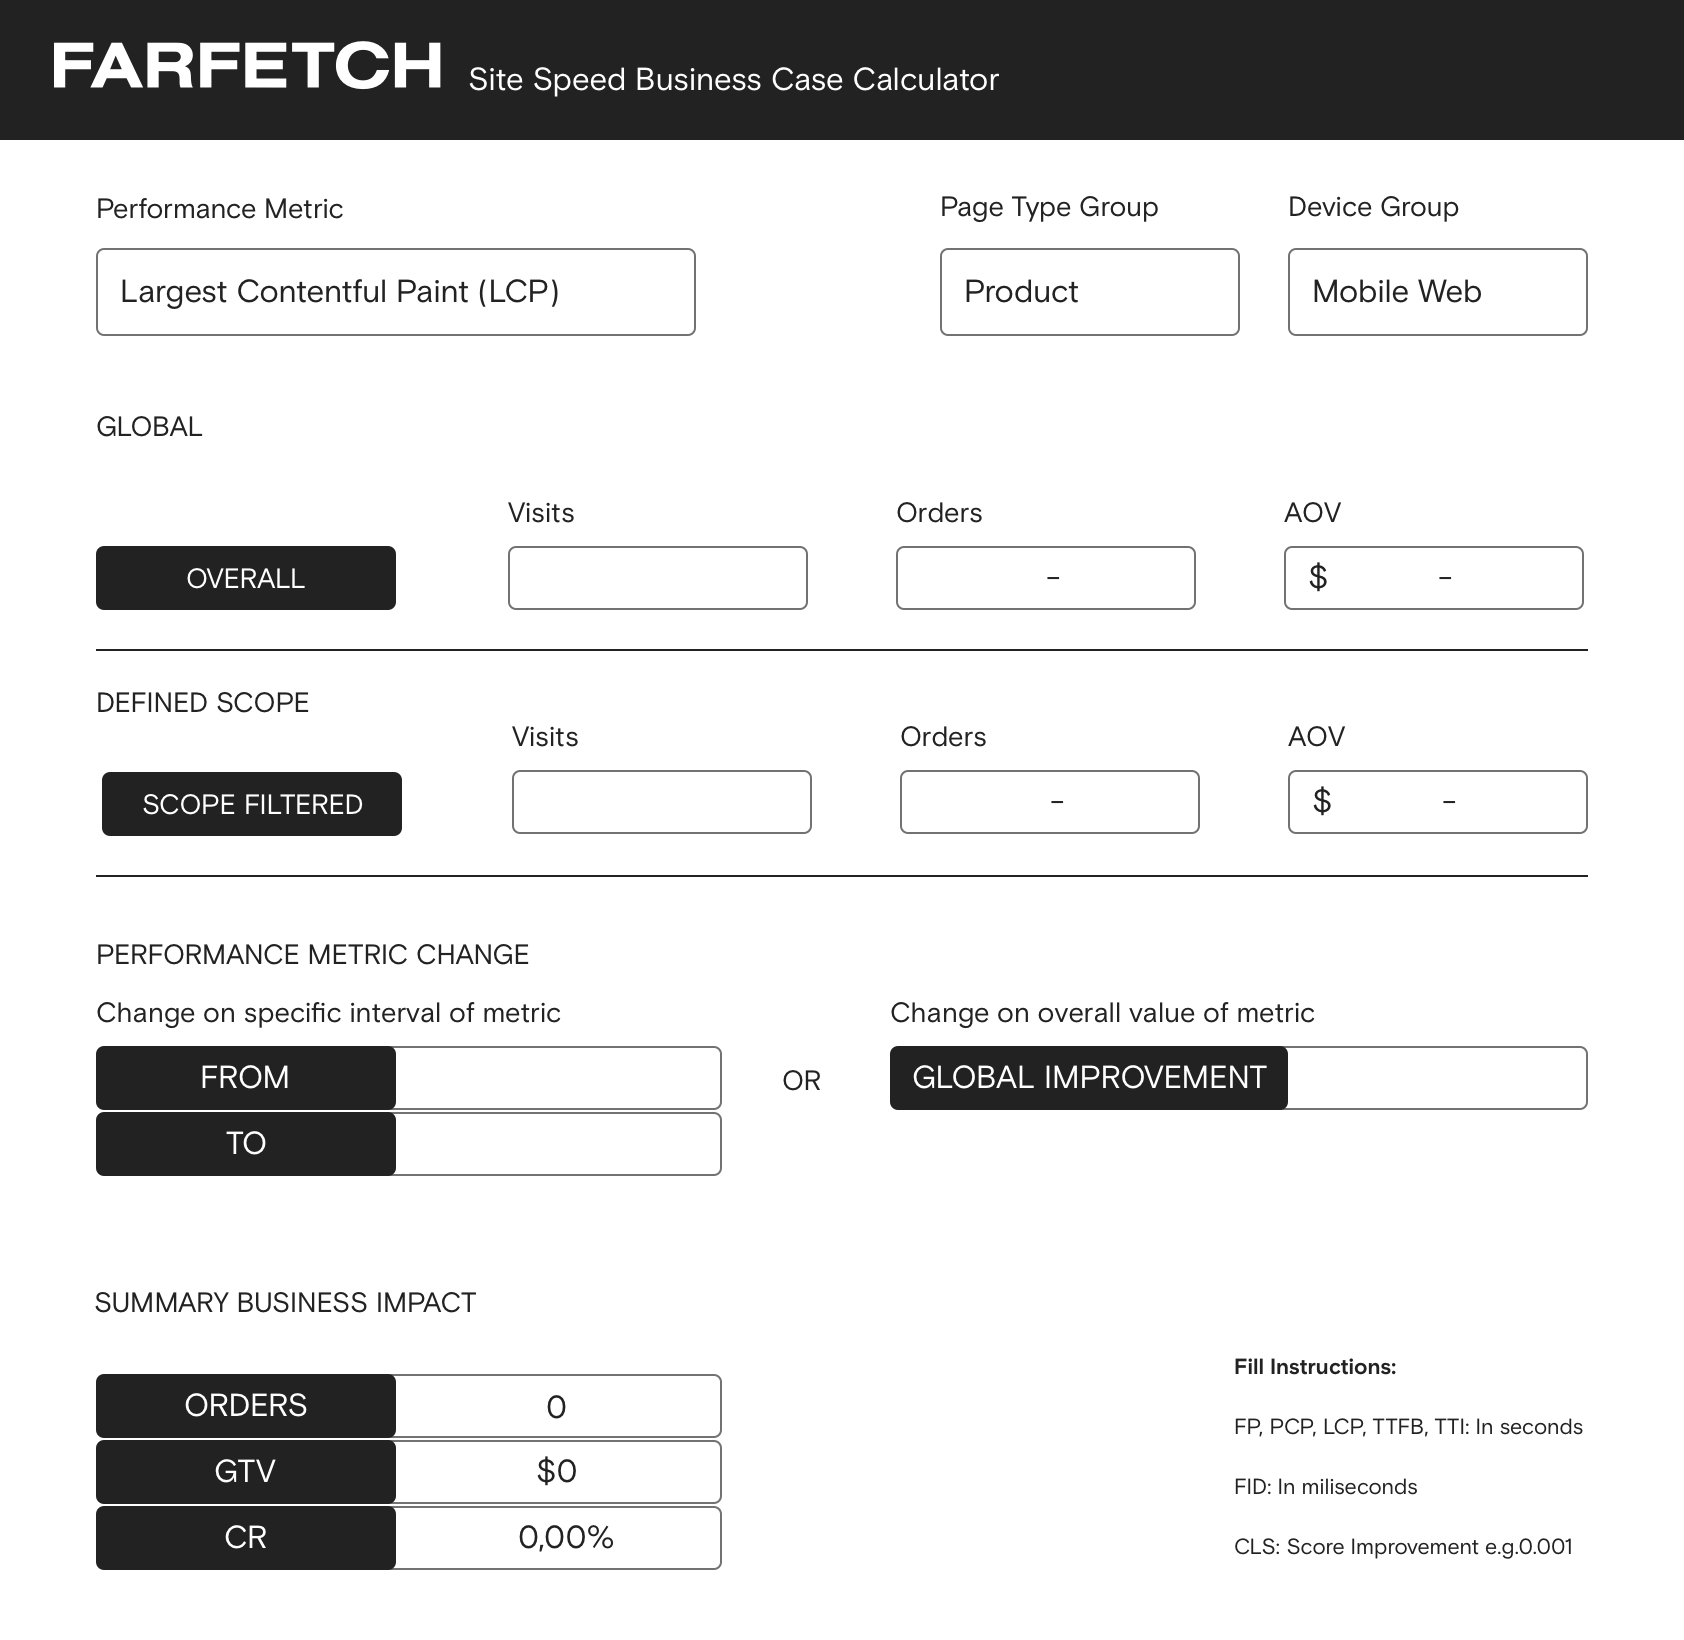 A screenshot of Farfetch's Site Speed Business Case Calculator.